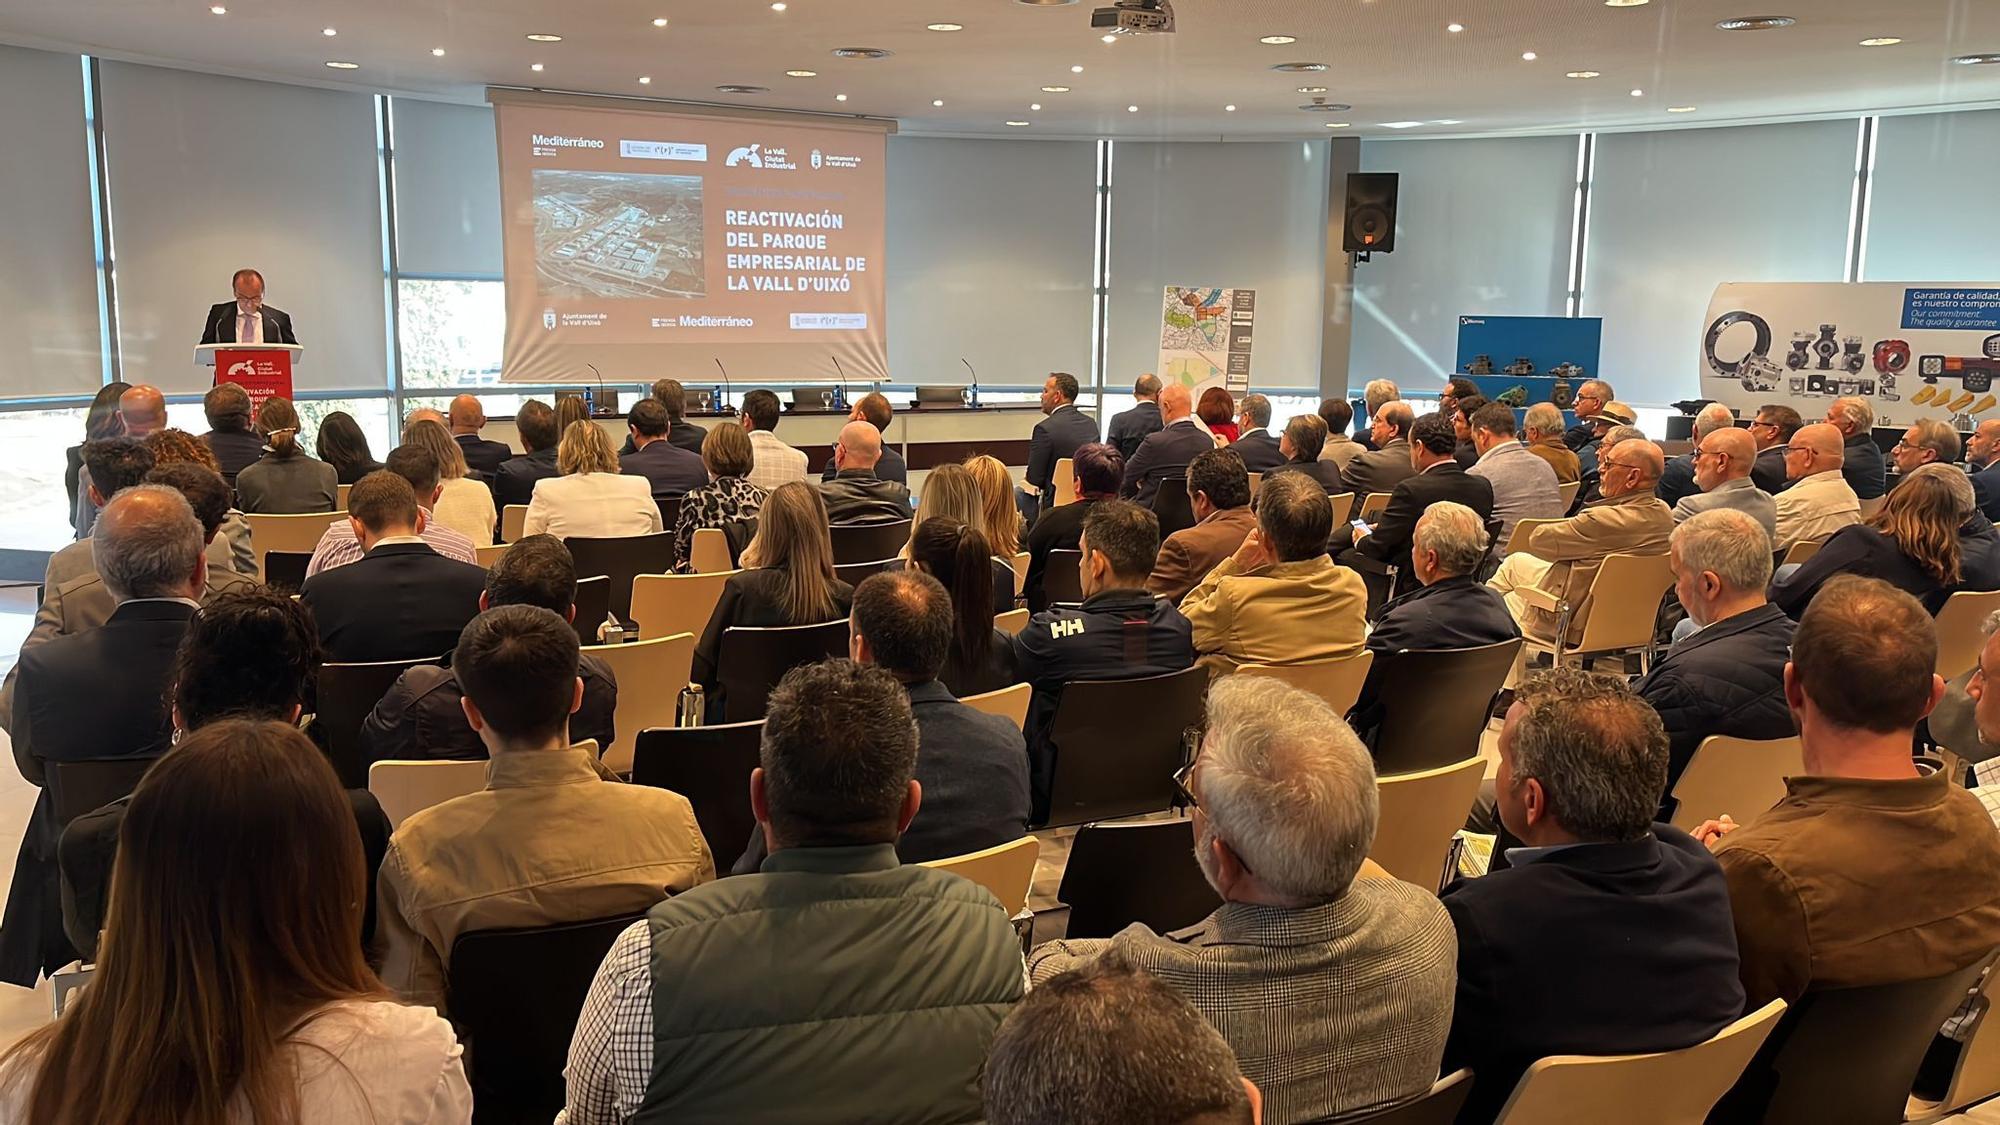 Galería: El parque empresarial de la Vall d'Uixó, a debate con 'Mediterráneo'